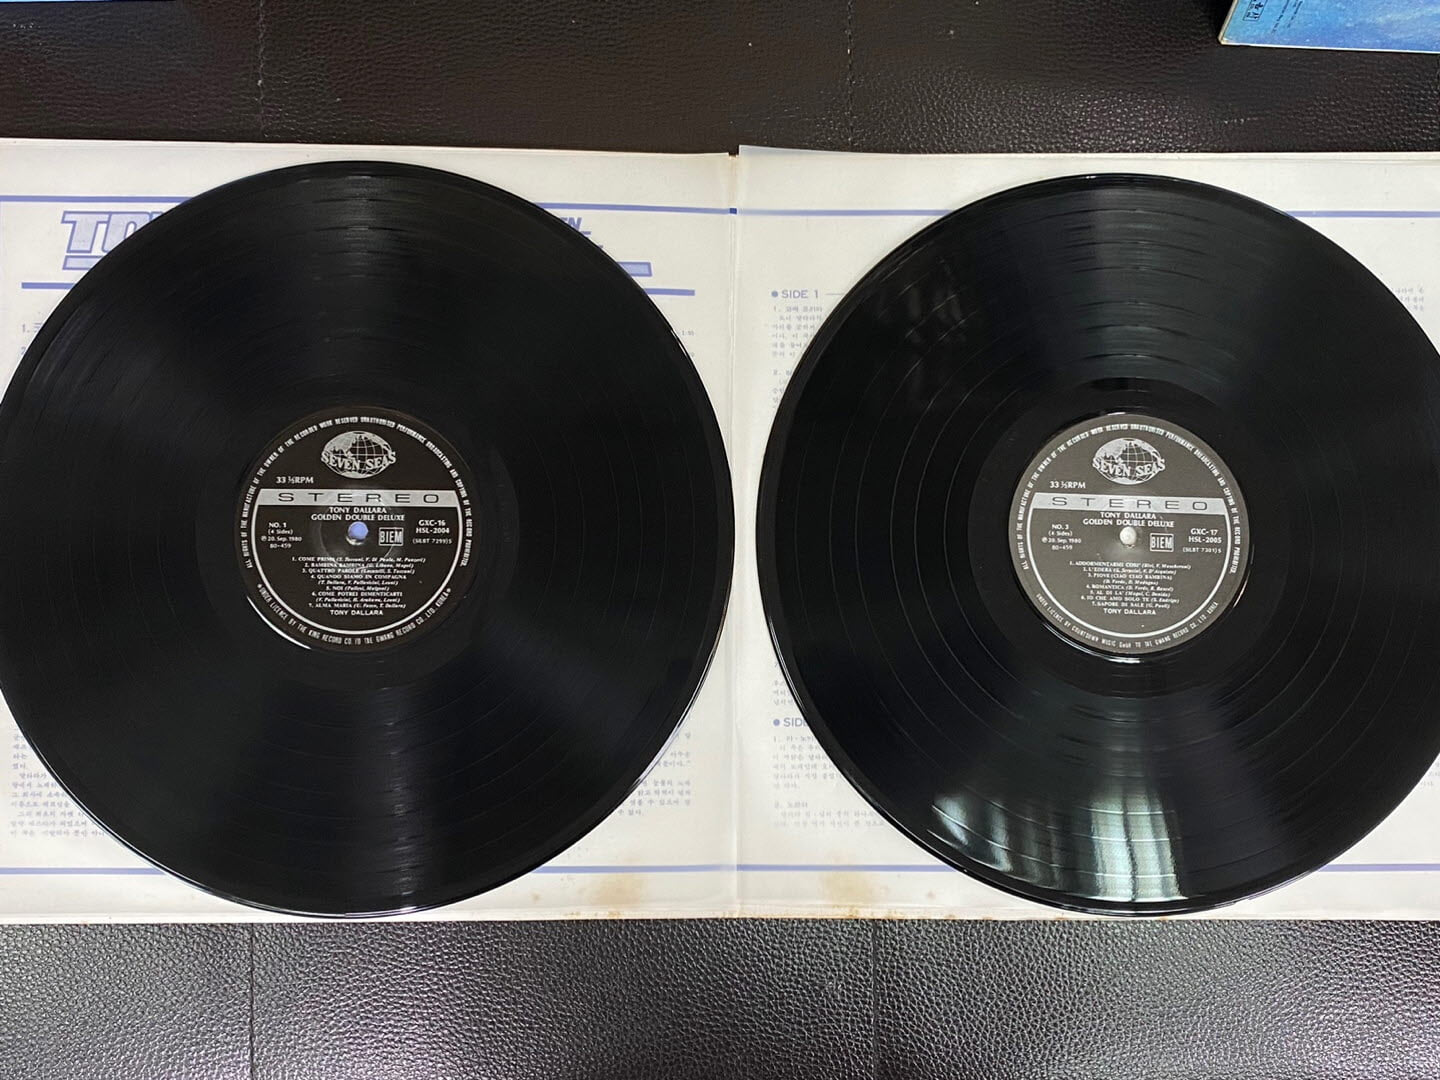 [LP] 토니 달라라 - Tony Dallara - Golden Double Deluxe 2Lps [태광-라이센스반]